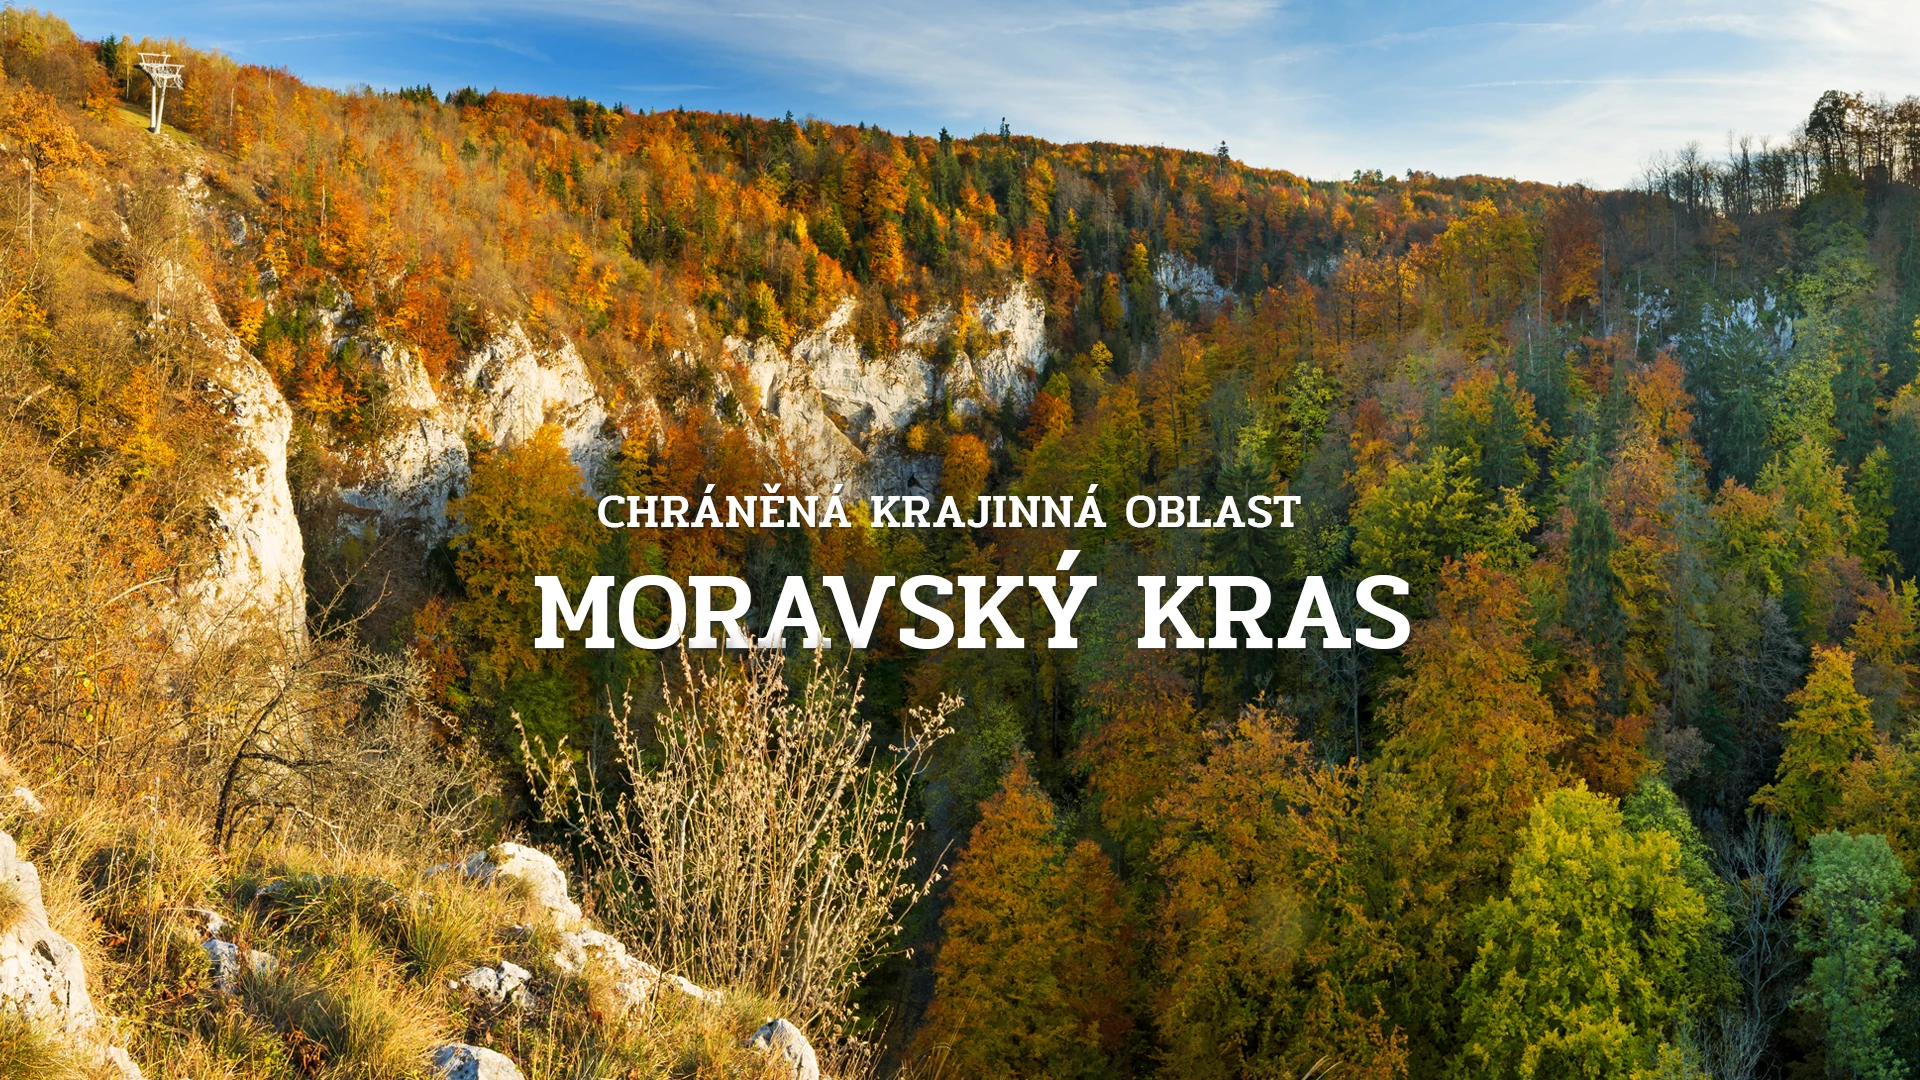 Chráněná krajinná oblast Moravský kras